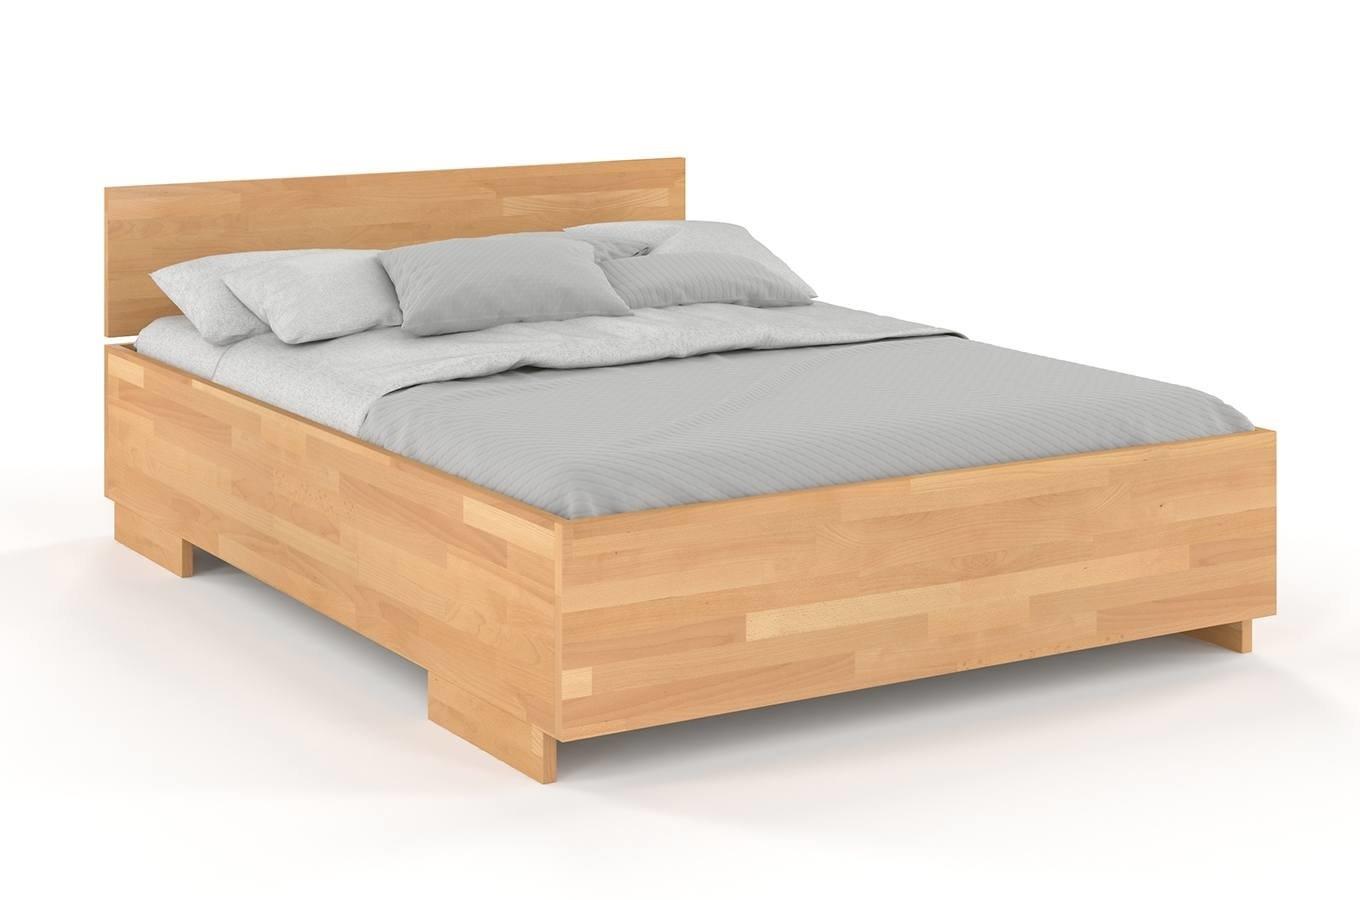 Łóżko drewniane bukowe Visby Bergman High BC (skrzynia na pościel) / 160x200 cm, kolor naturalny